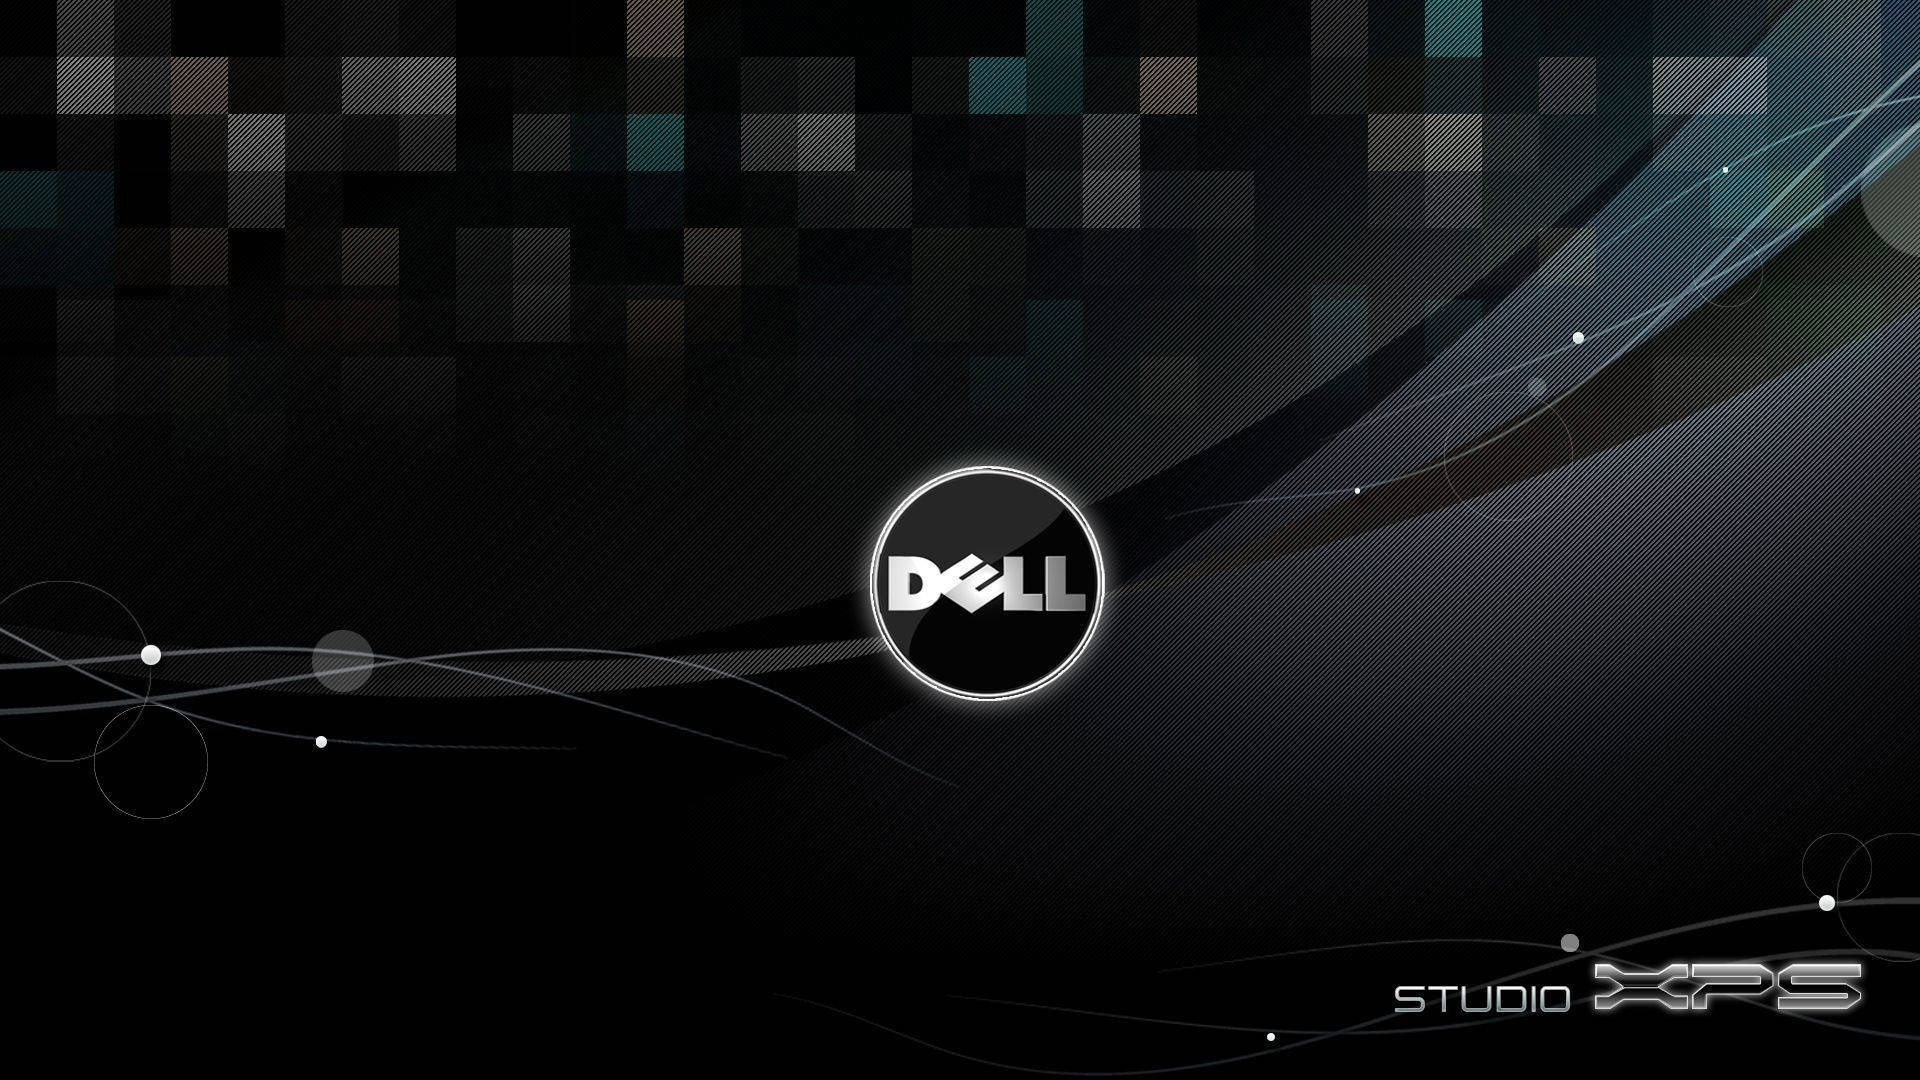 Studio Xps Dell Hd Logo Wallpaper